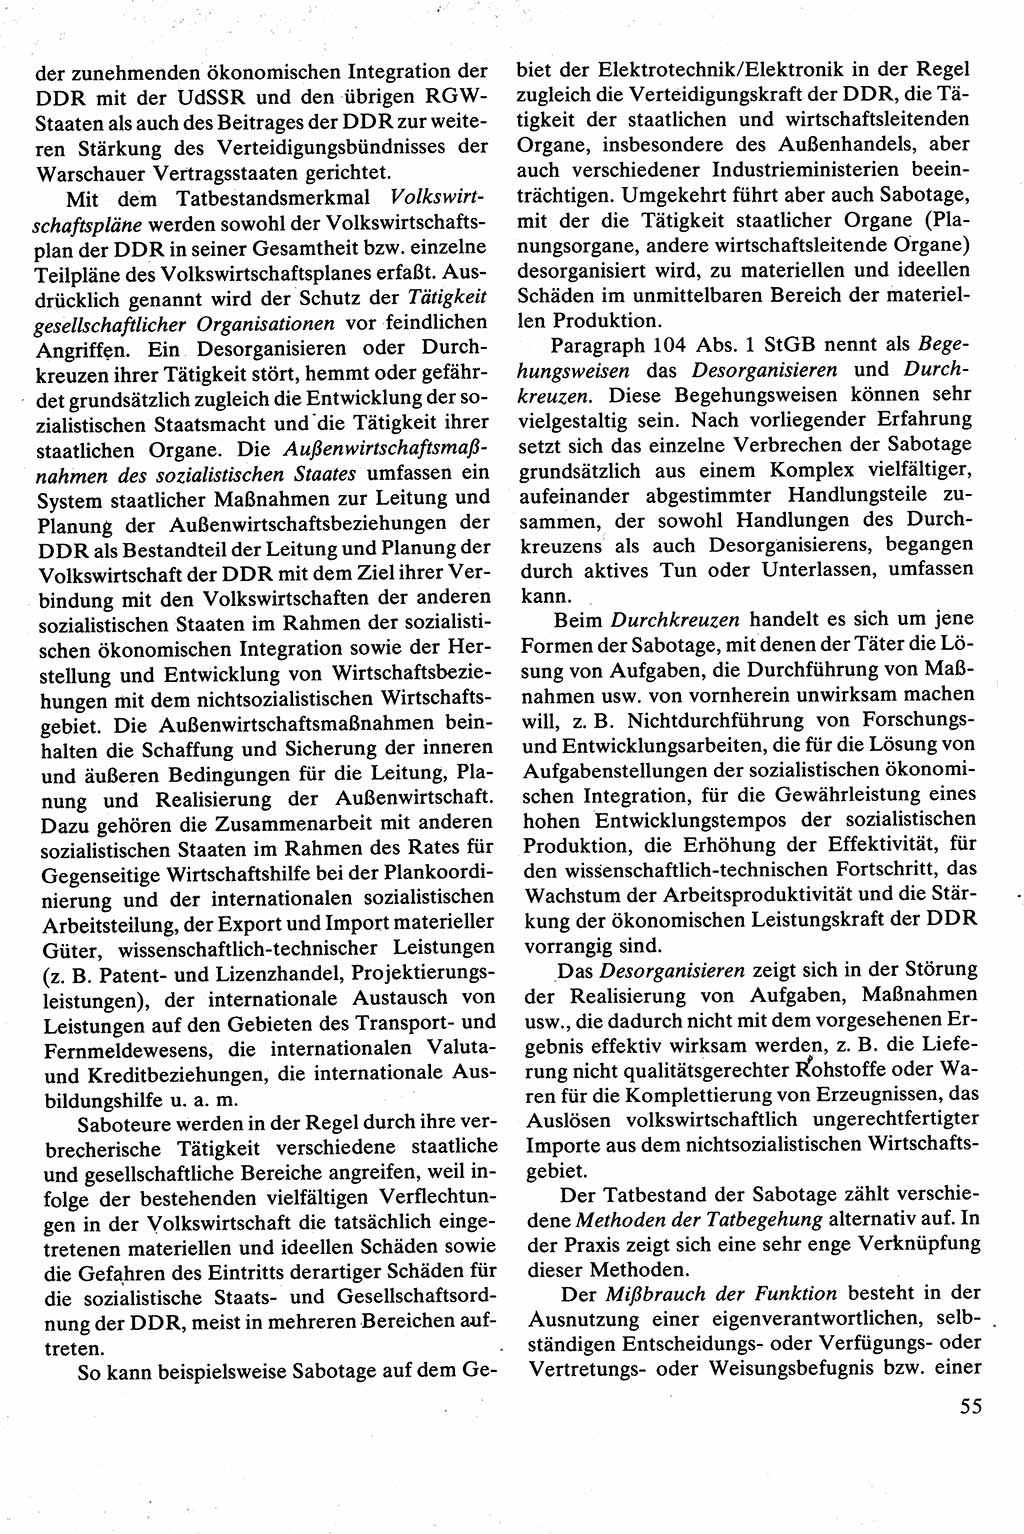 Strafrecht [Deutsche Demokratische Republik (DDR)], Besonderer Teil, Lehrbuch 1981, Seite 55 (Strafr. DDR BT Lb. 1981, S. 55)